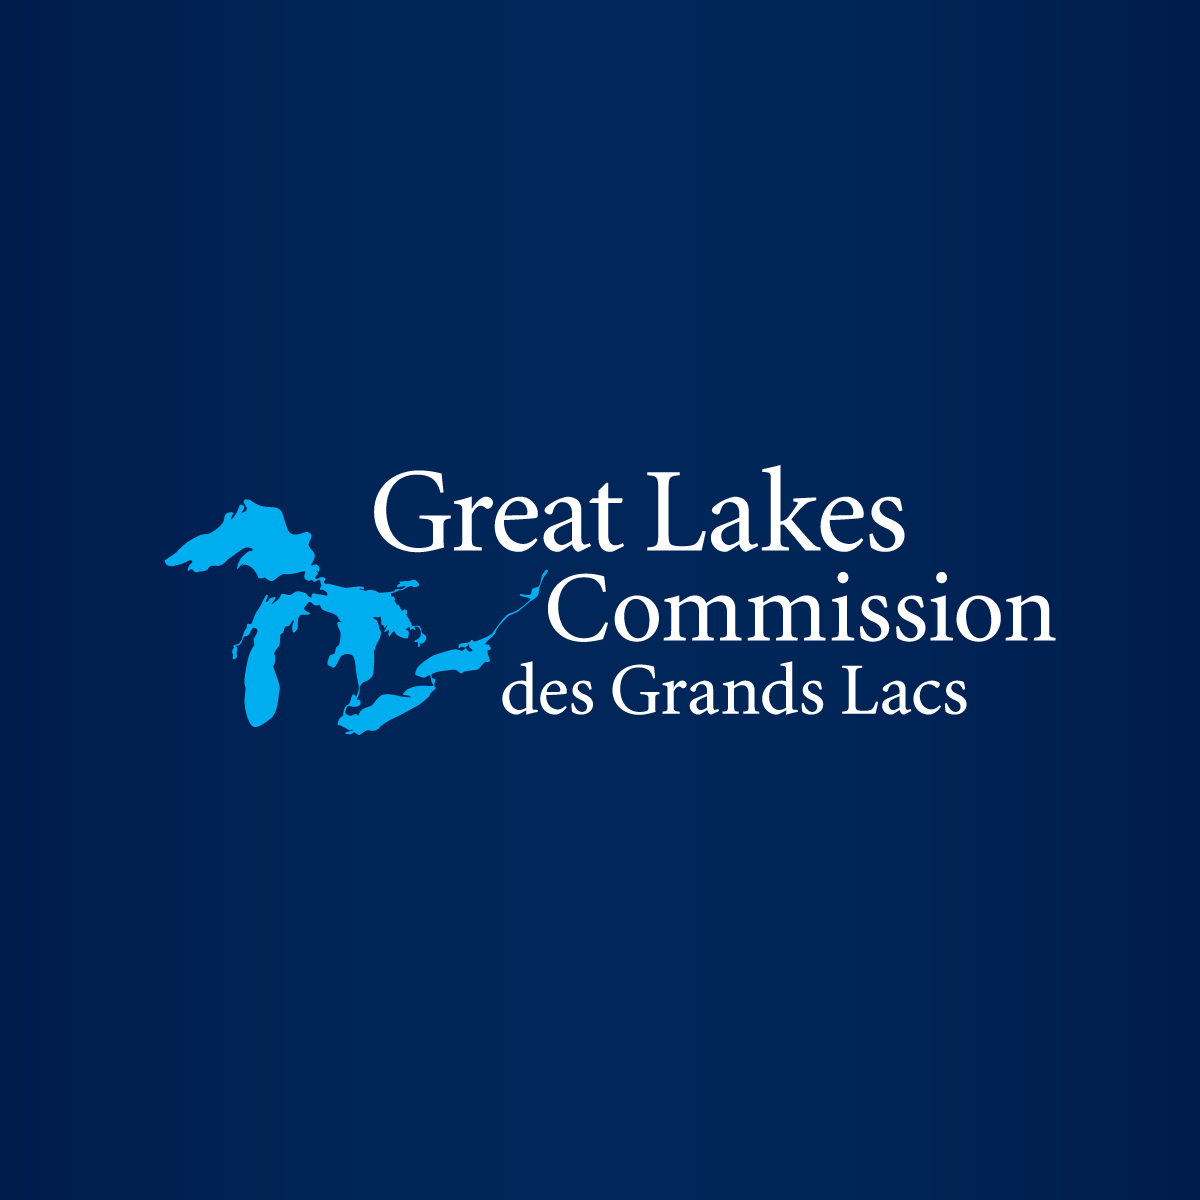 Landing Blitz Week serves as reminder to protect Great Lakes